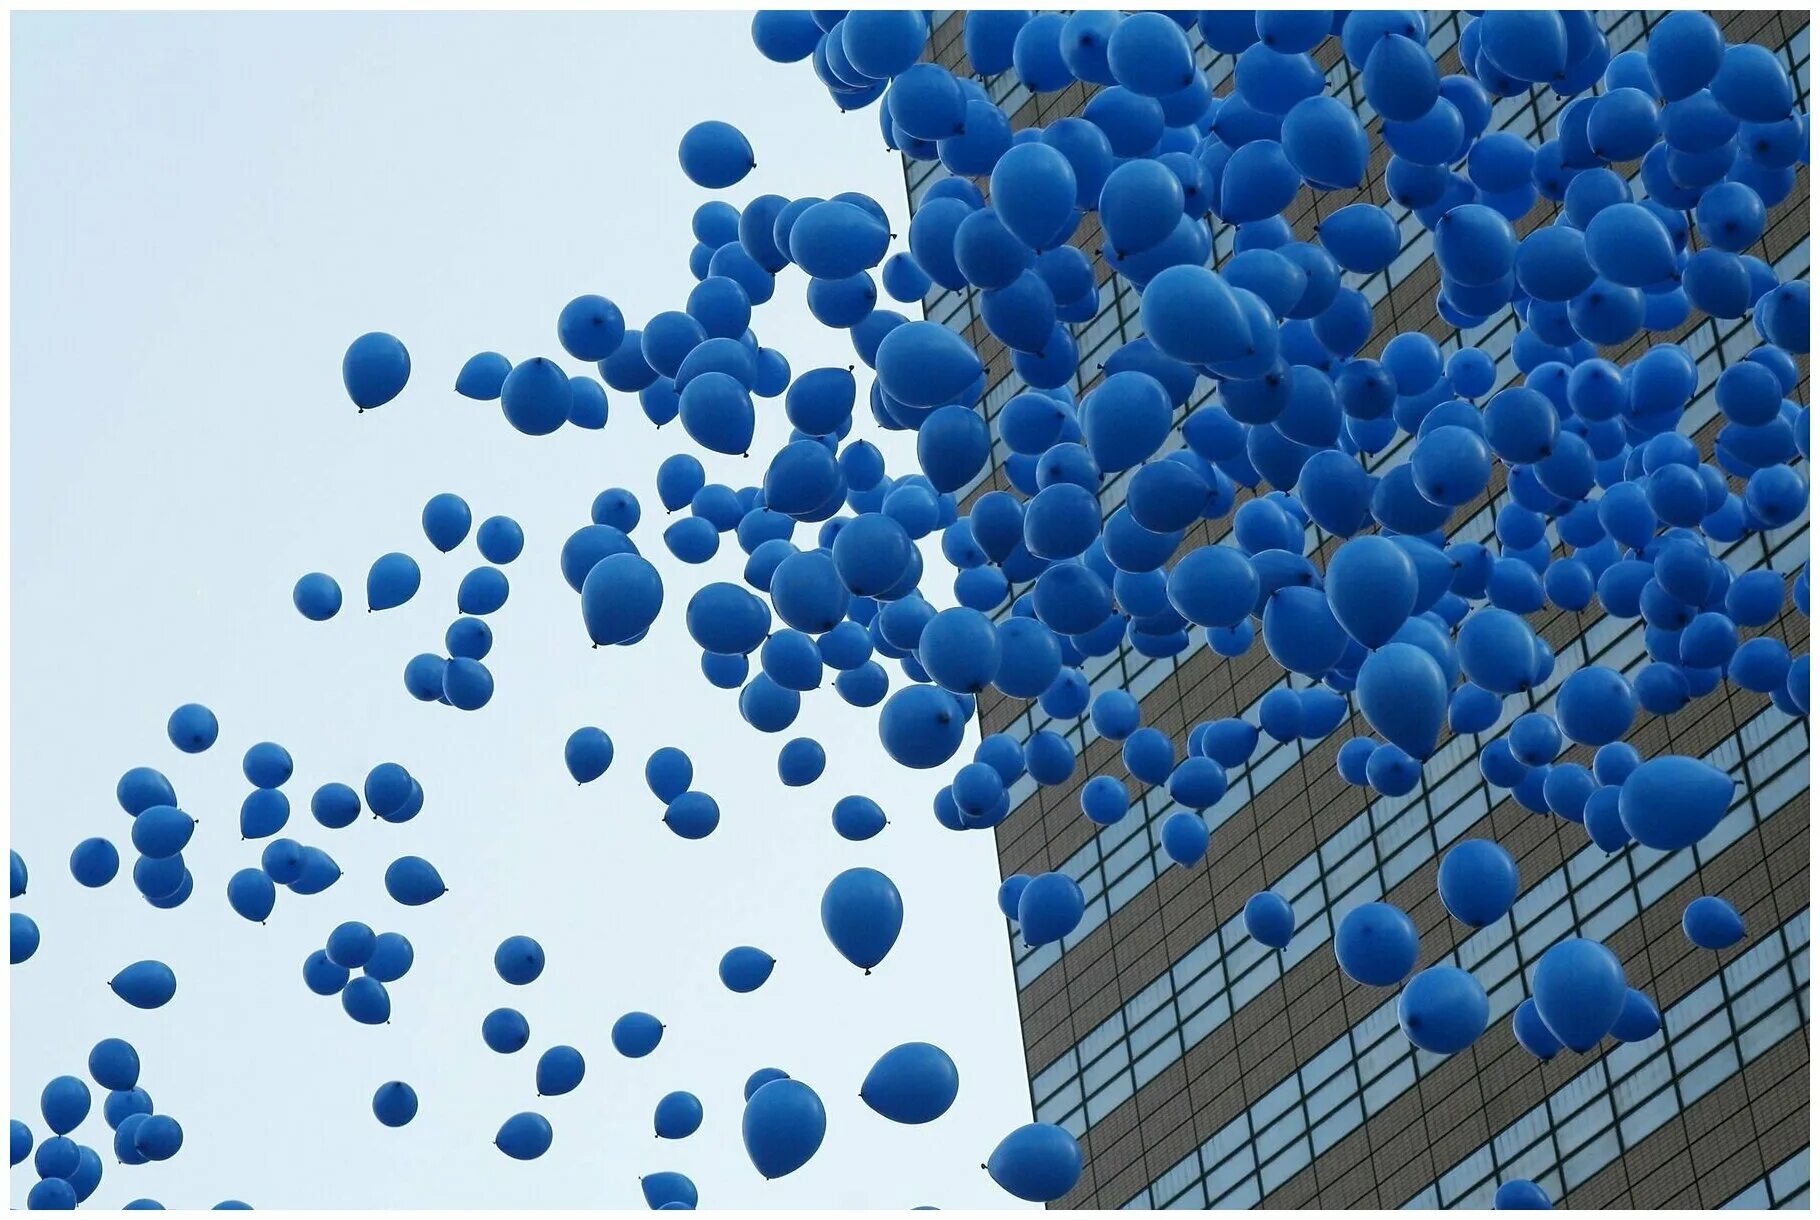 Аптека голубых шаров. Синий шарик. Синие шары. Синие шары в небе. Синий воздушный шарик.